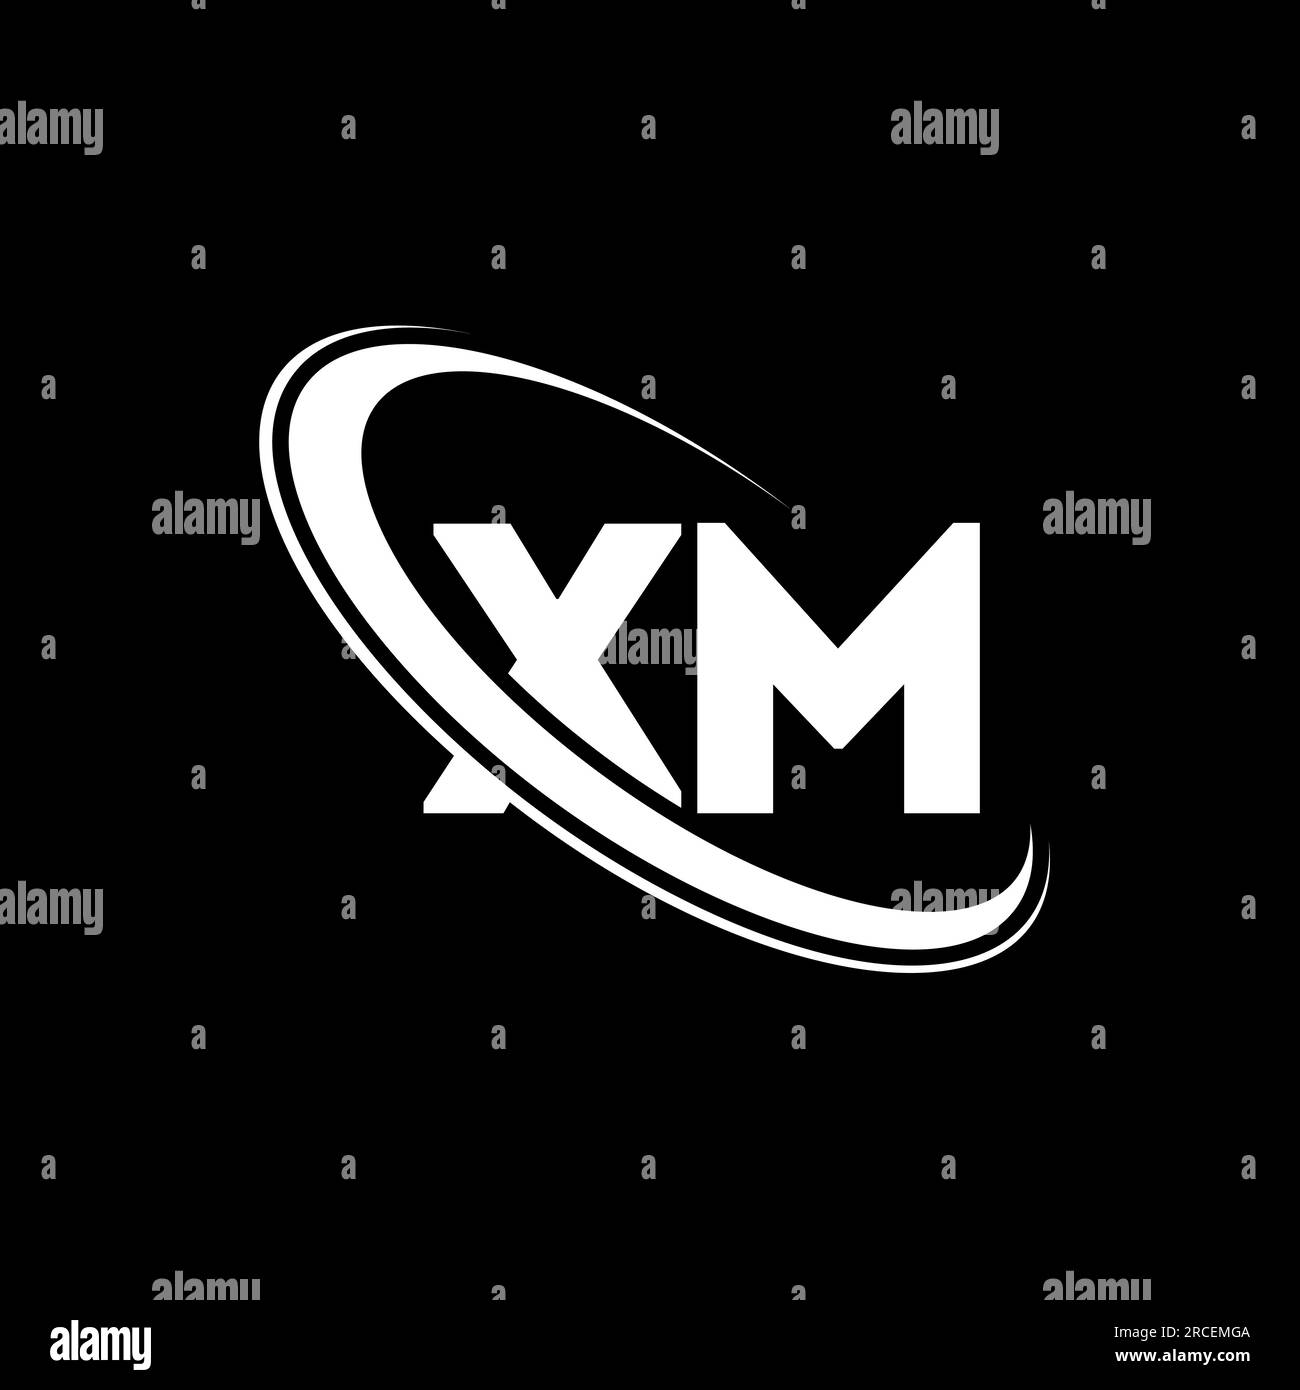 Logo XM. Conception X M. Lettre XM blanche. Logo XM/X M Lettre initiale du logo monogramme en majuscules avec cercle lié XM. Illustration de Vecteur